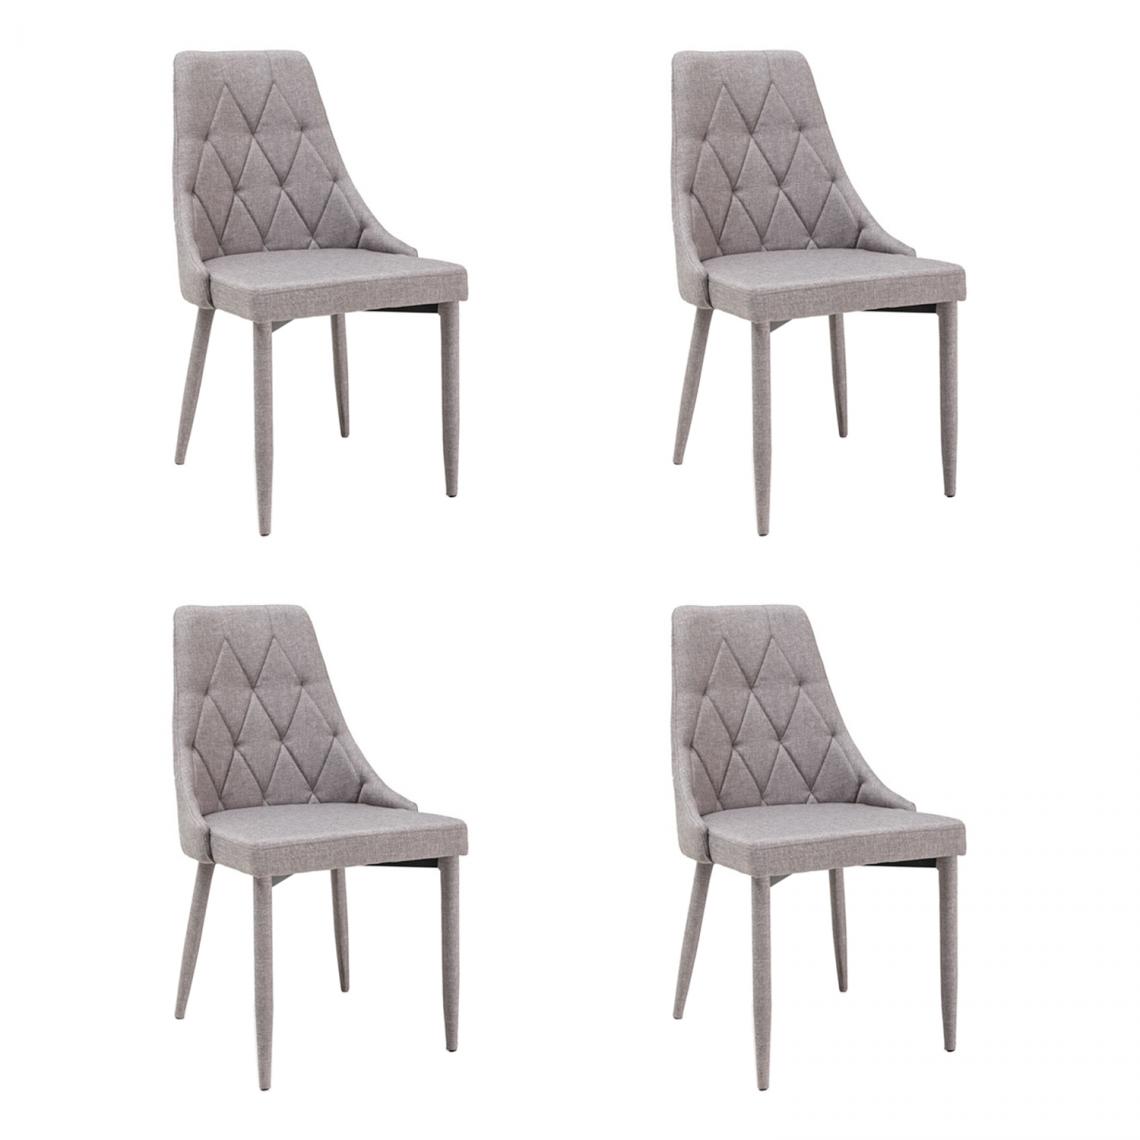 Hucoco - TRIZ - Lot de 4 chaises - Style scandinave - 88x46x46 cm - Rembourré en tissu - Structure en métal - Gris - Chaises